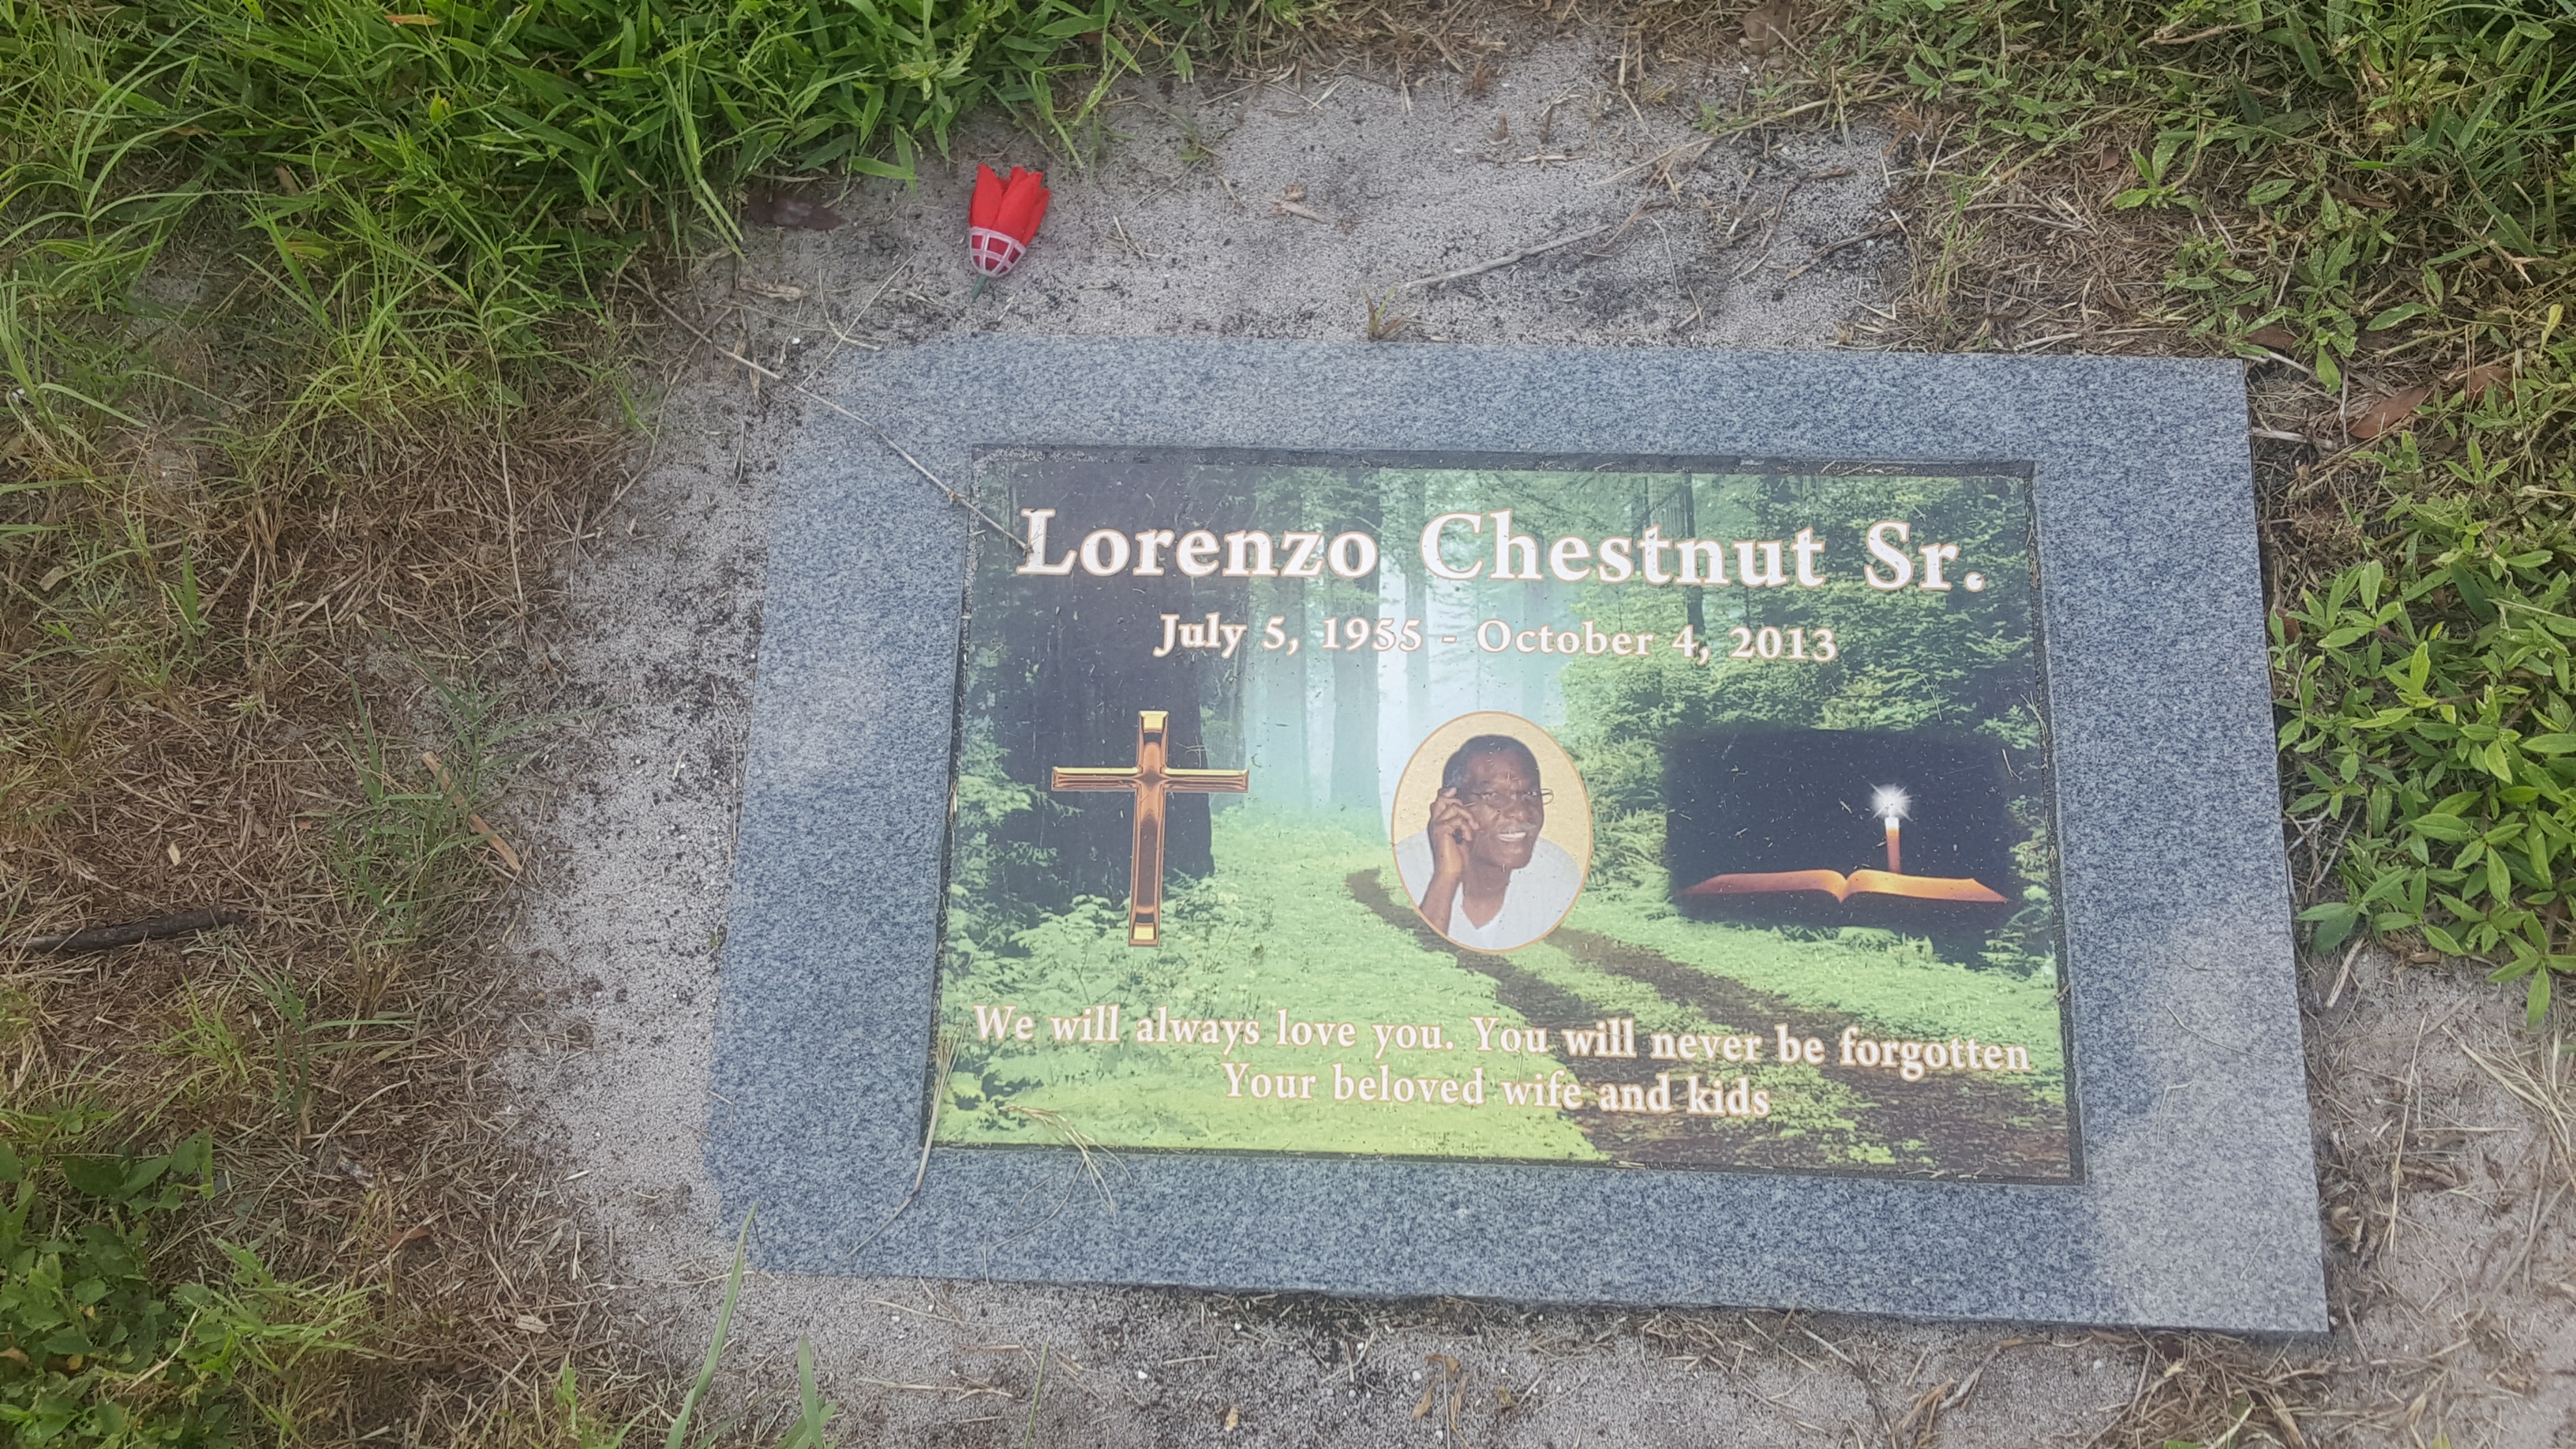 Lorenzo Chestnut, Sr